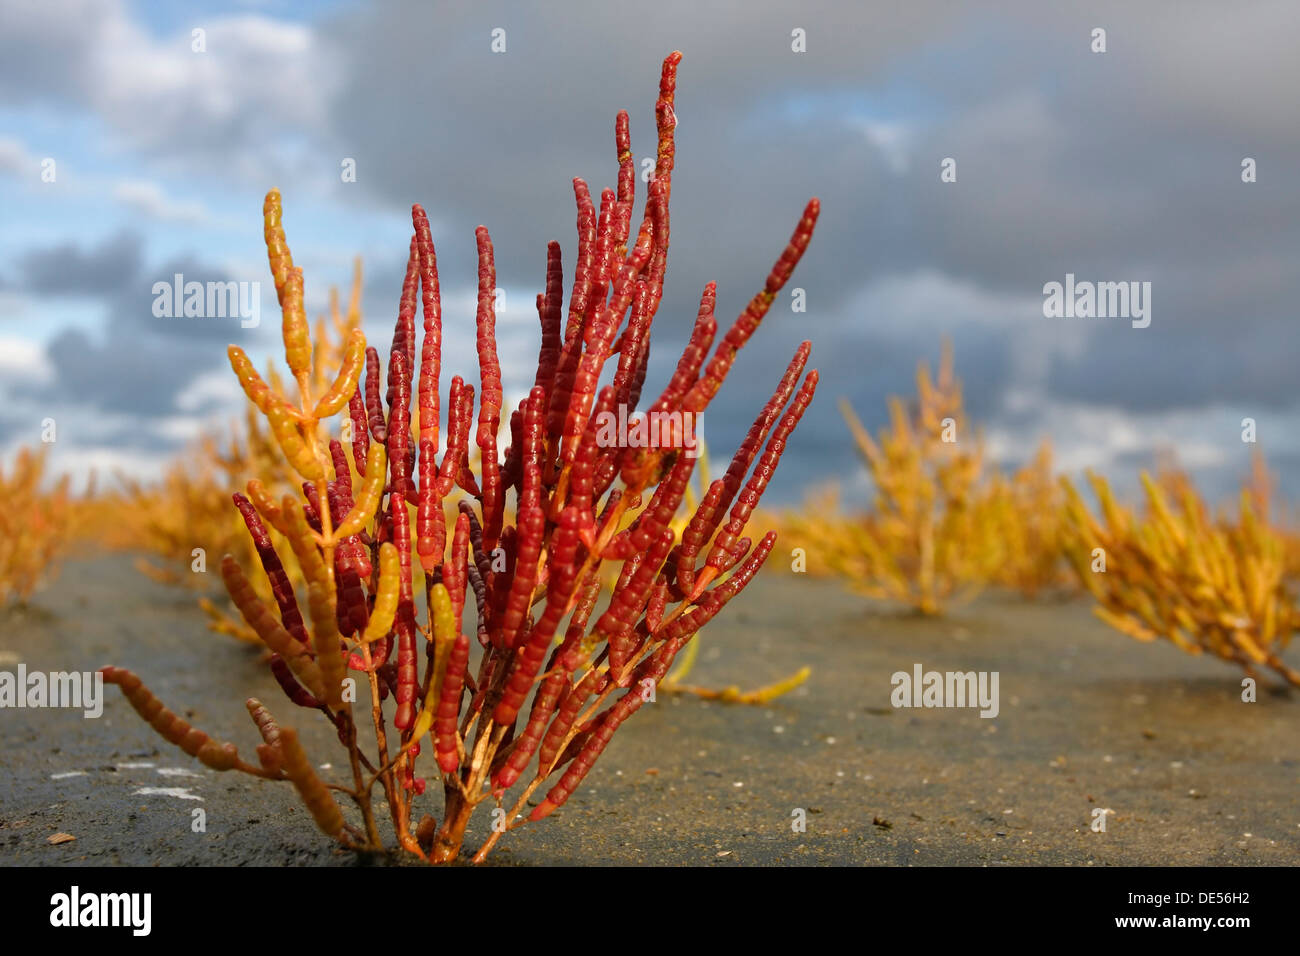 Salicornes ou salicorne (Salicornia europaea) dans une vasière, marais salé, couleurs d'automne, Minsener Oog, îles de la Frise orientale, Banque D'Images